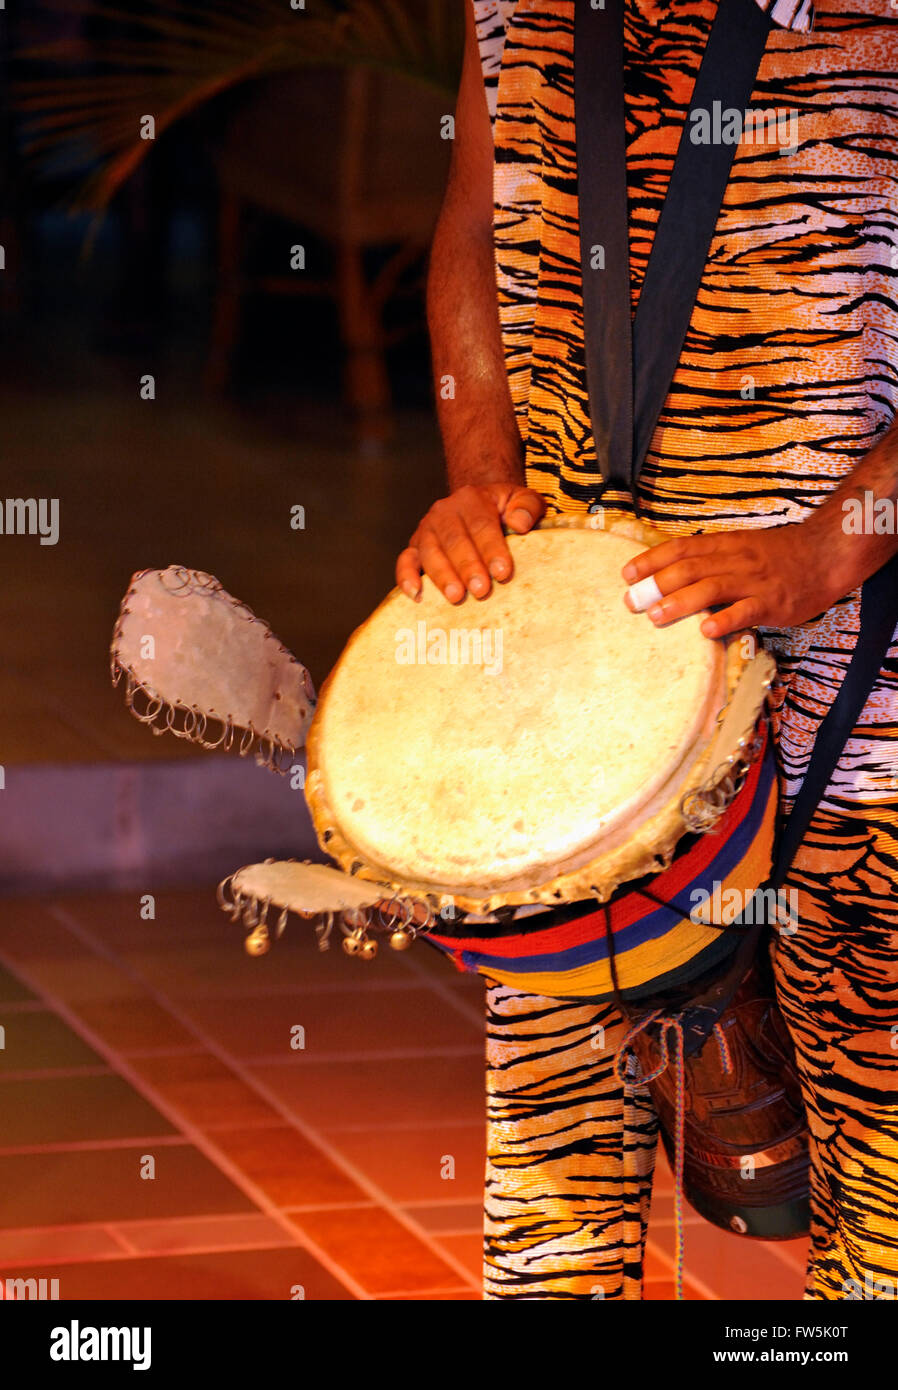 Mauritische Djembe / Djumbe drum mit Ohren; aus Südwest-Afrika; Sangban (mittlere Trommel). Beachten Sie die "Ohren", die Rassel. Sega ist die nationalen Gesang und Tanz von Mauritius, vielseitig einsetzbar. Unterschiedliche Instrumente Rhythmus nur ohne Melodie, wie z. B. die Ravane (eine dünne, große Trommel der Ziegenmilch Haut), Maravane (Kies gefüllten Kasten Klappern beim Schütteln) und das Dreieck in Begleitung singt die Sängerin über die Wirrungen der Liebe oder die humorvolle Seite des Lebens. Stockfoto